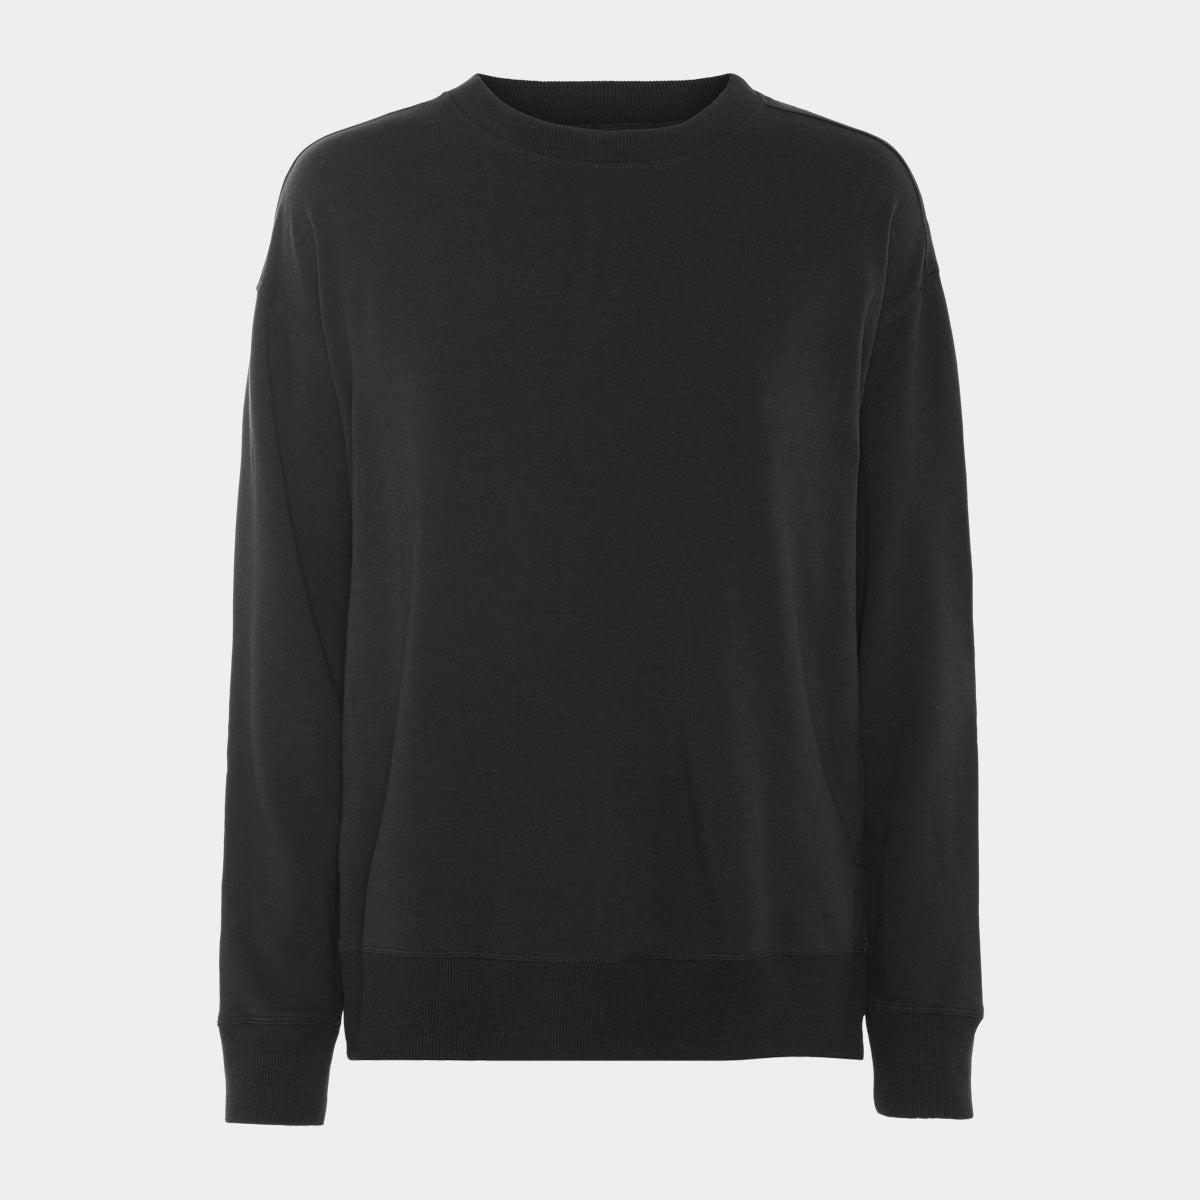 Se Bambus sweatshirt | sorte sweatshirt til damer fra Boody, L hos Bambustøj.dk